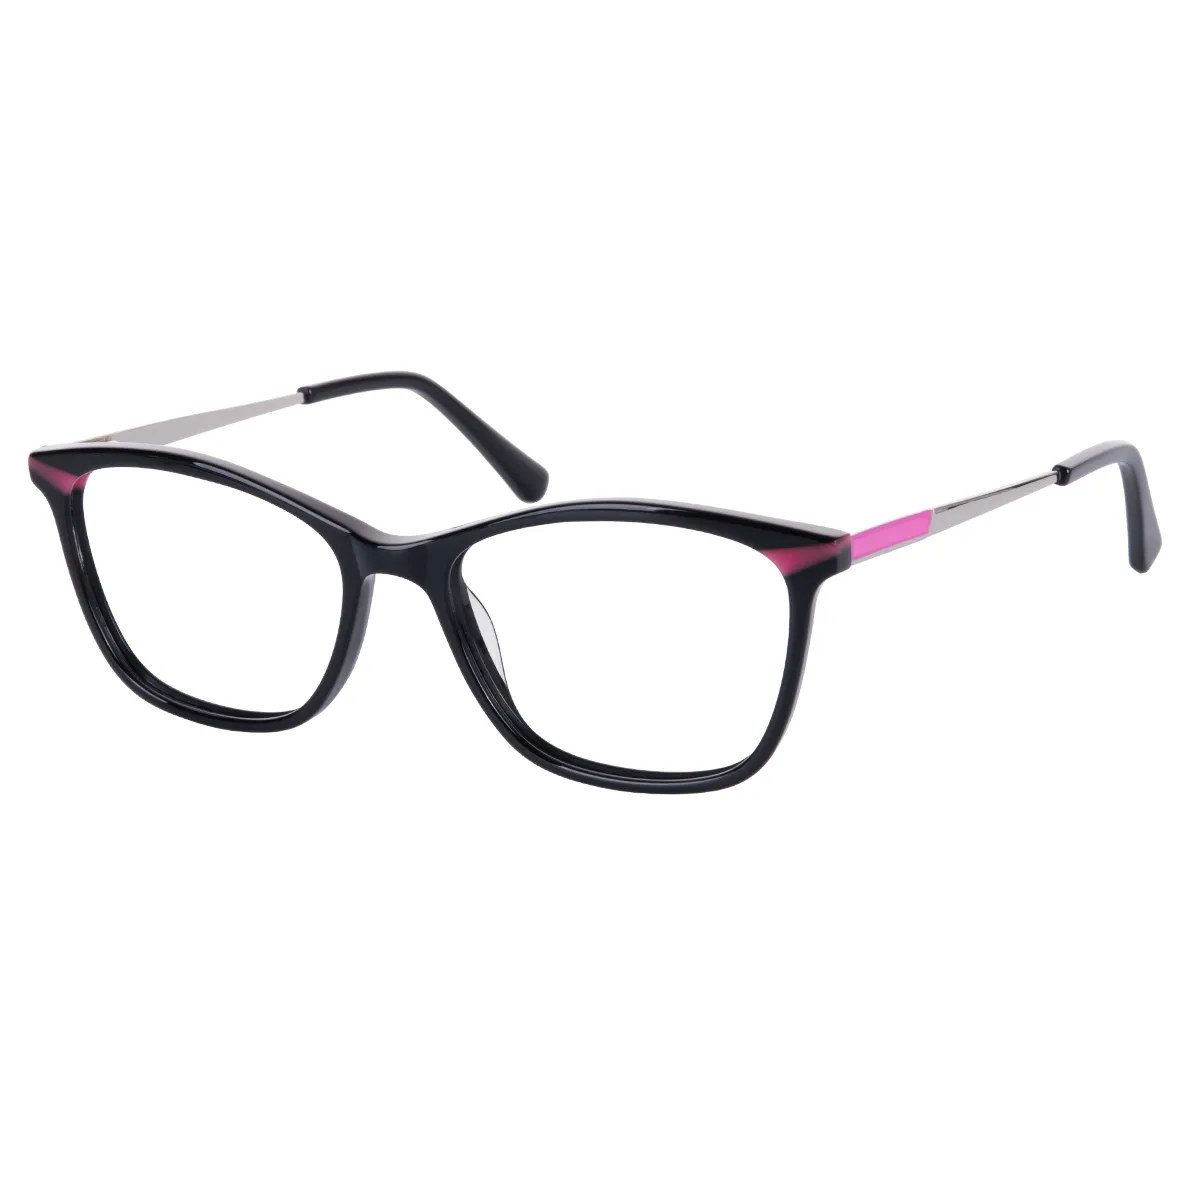 Abel - Rectangle Black Glasses for Women